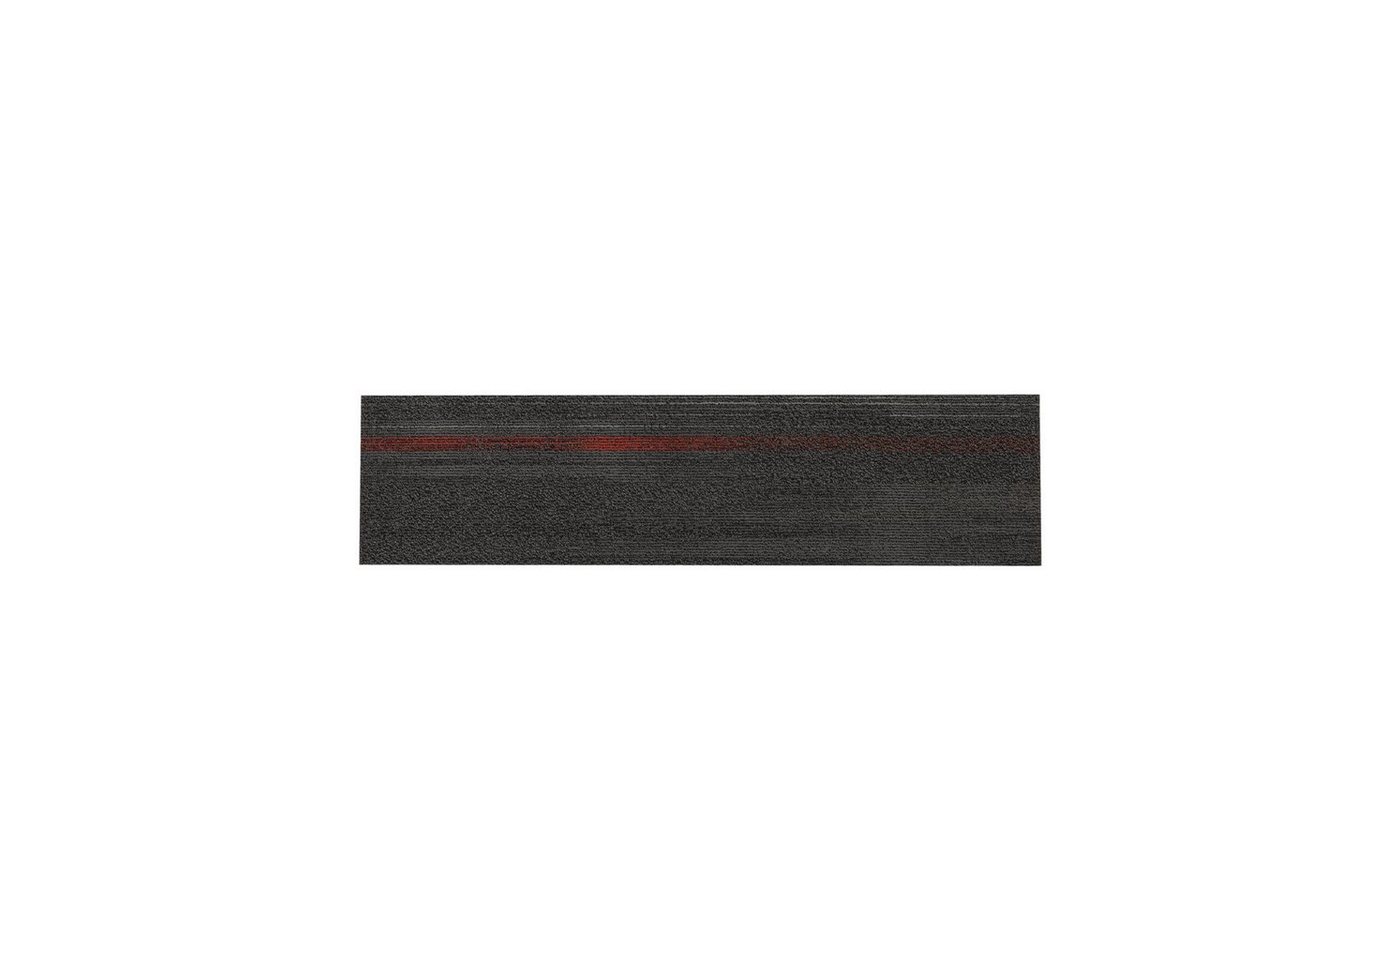 Teppichfliese Aberdeen, Erhältlich in 12 Farben, 25 x 100 cm, Teppichdiele, Fliese, Floordirekt von Floordirekt